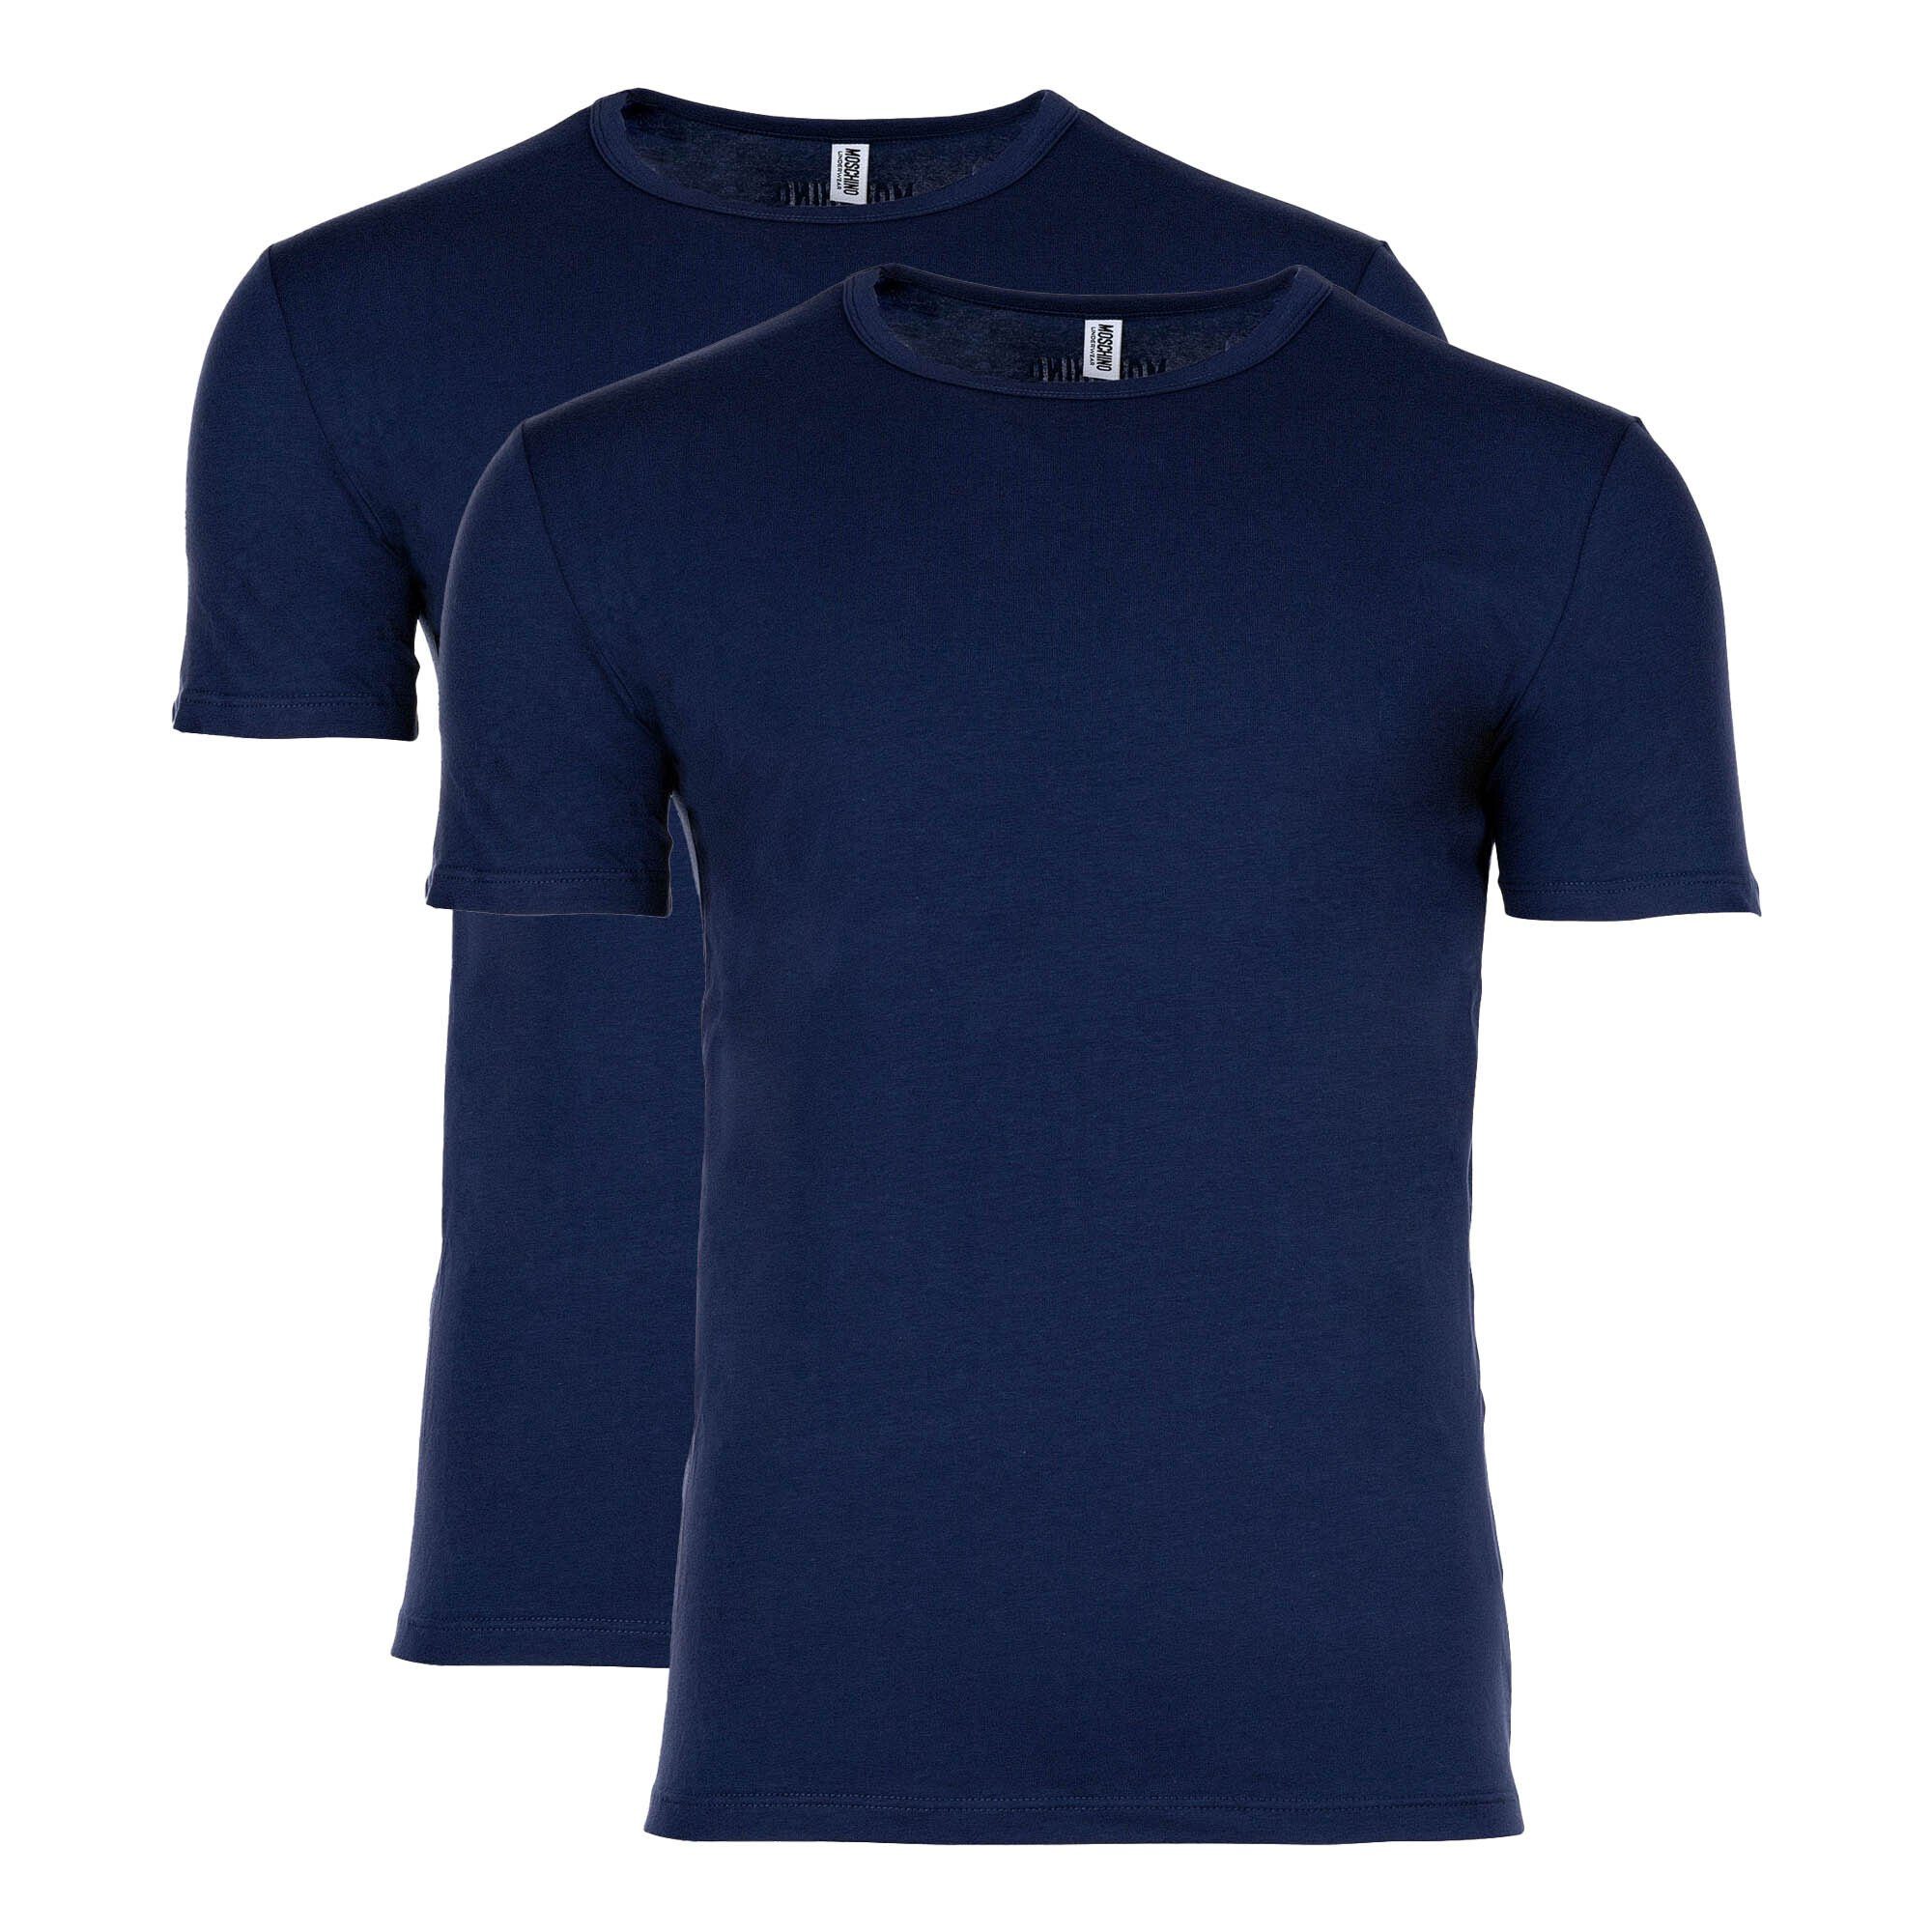 Moschino T-Shirt Herren T-Shirt 2er Pack - Crew Neck, Rundhals Blau